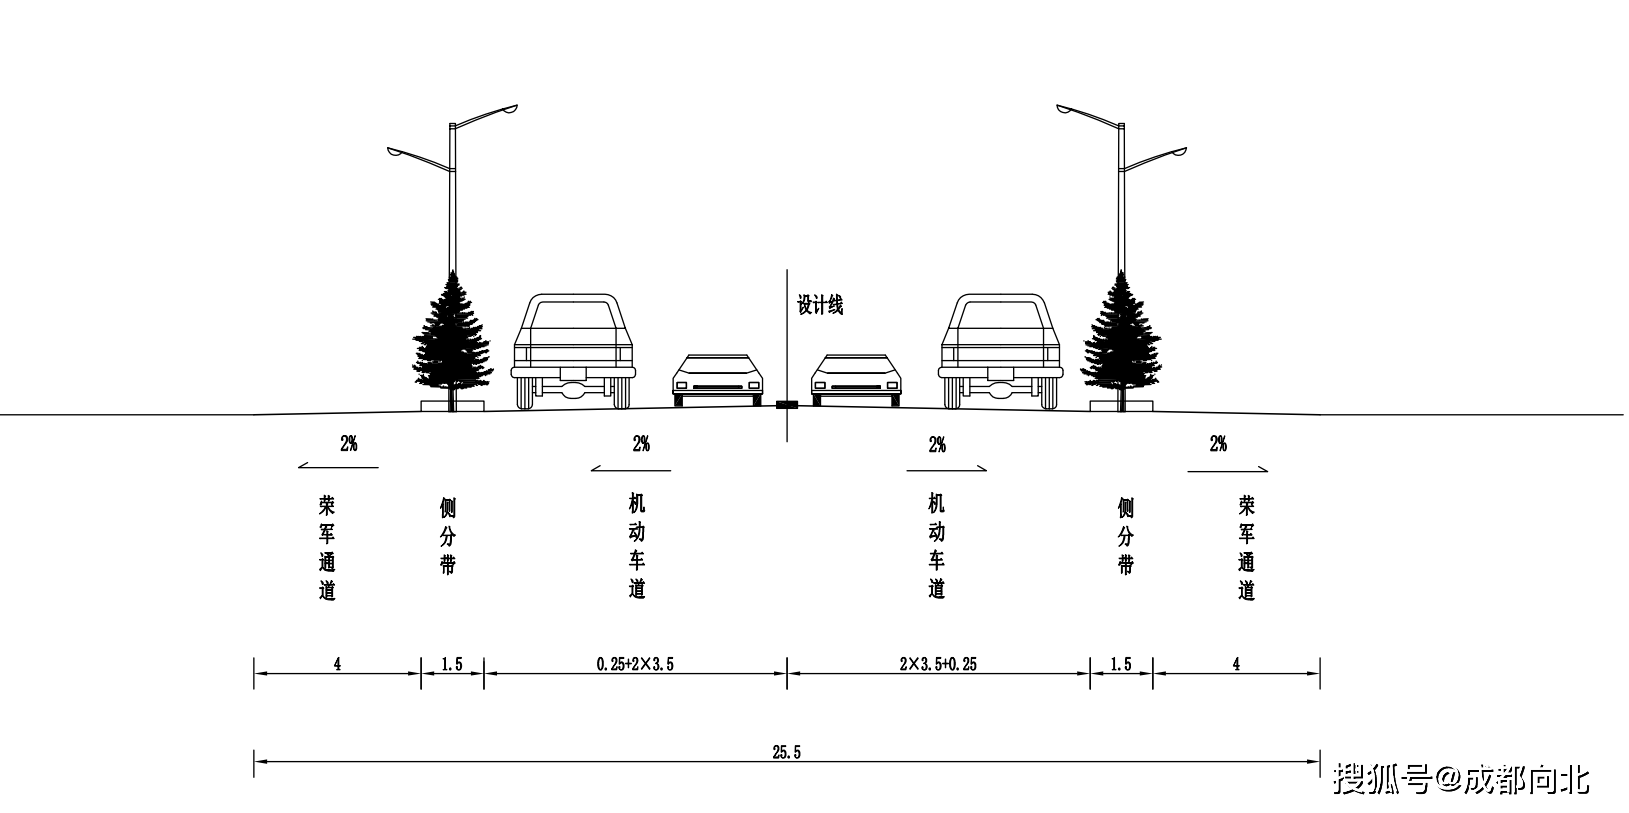 路基标准横断面图(一)ko 000～k1 460